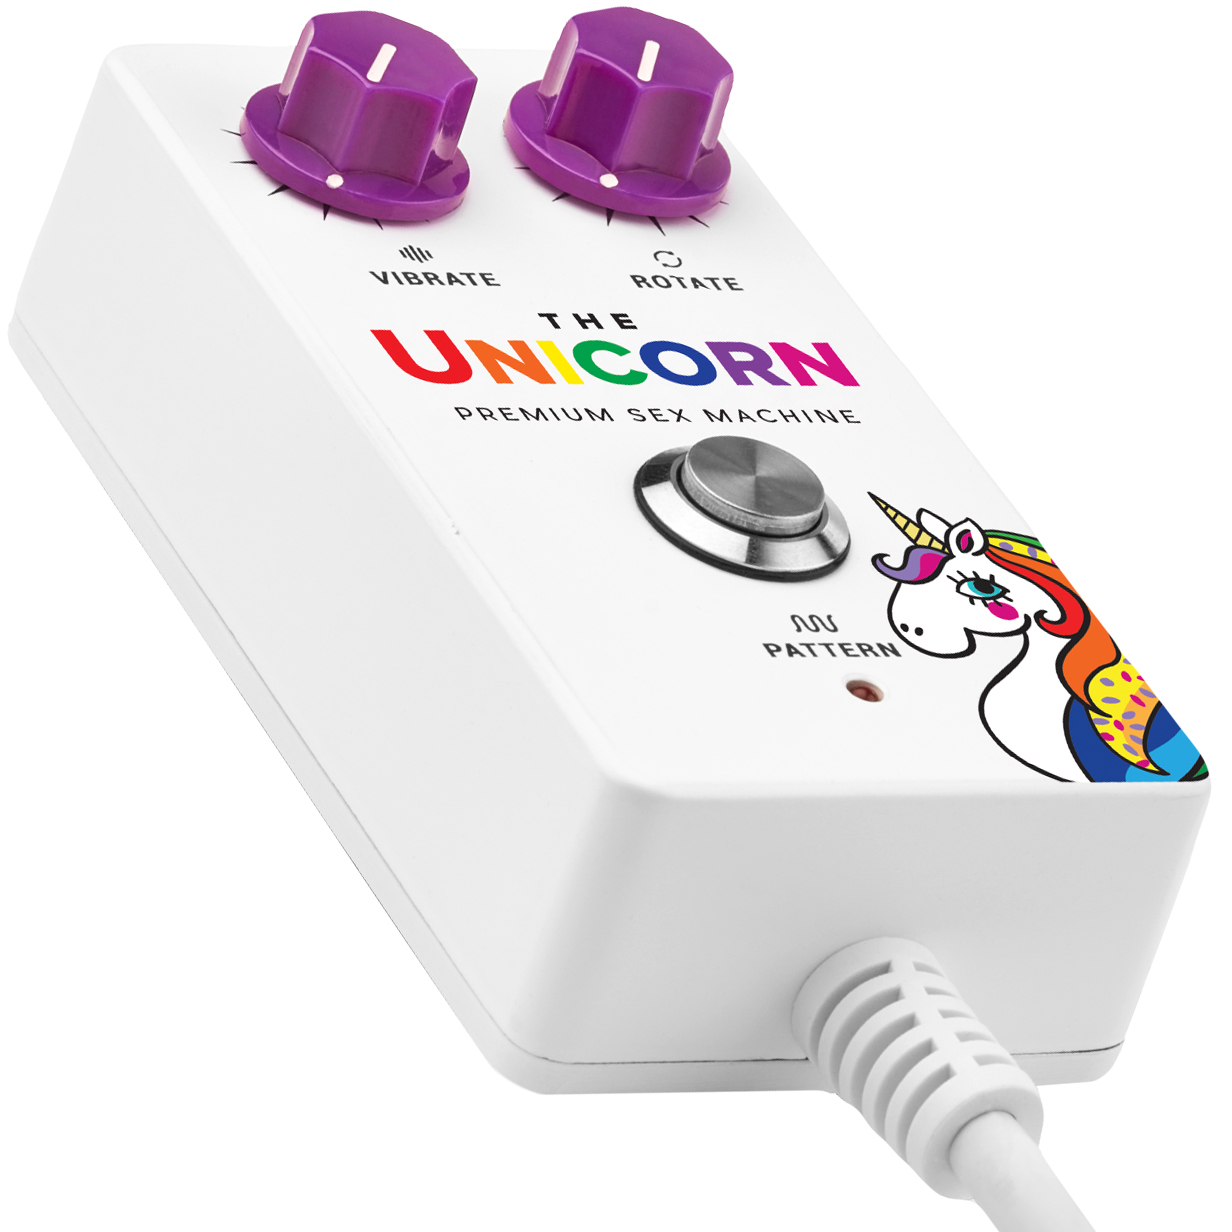 The Unicorn - Remote